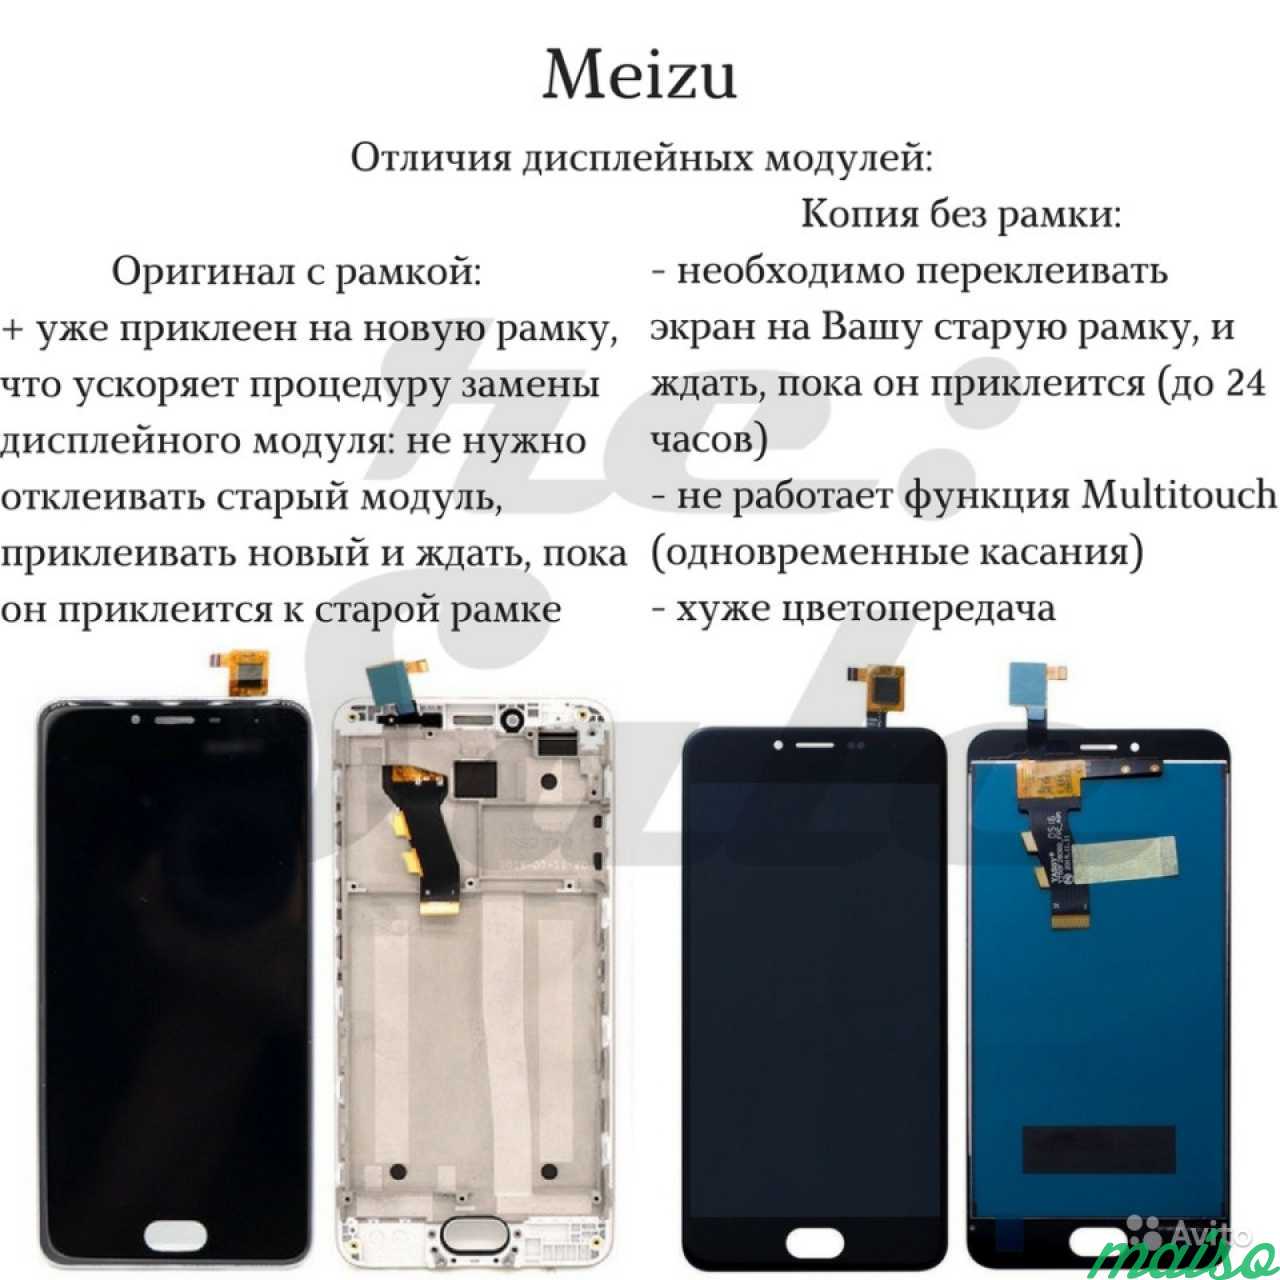 Ремонт телефонов Meizu в Санкт-Петербурге. Фото 6